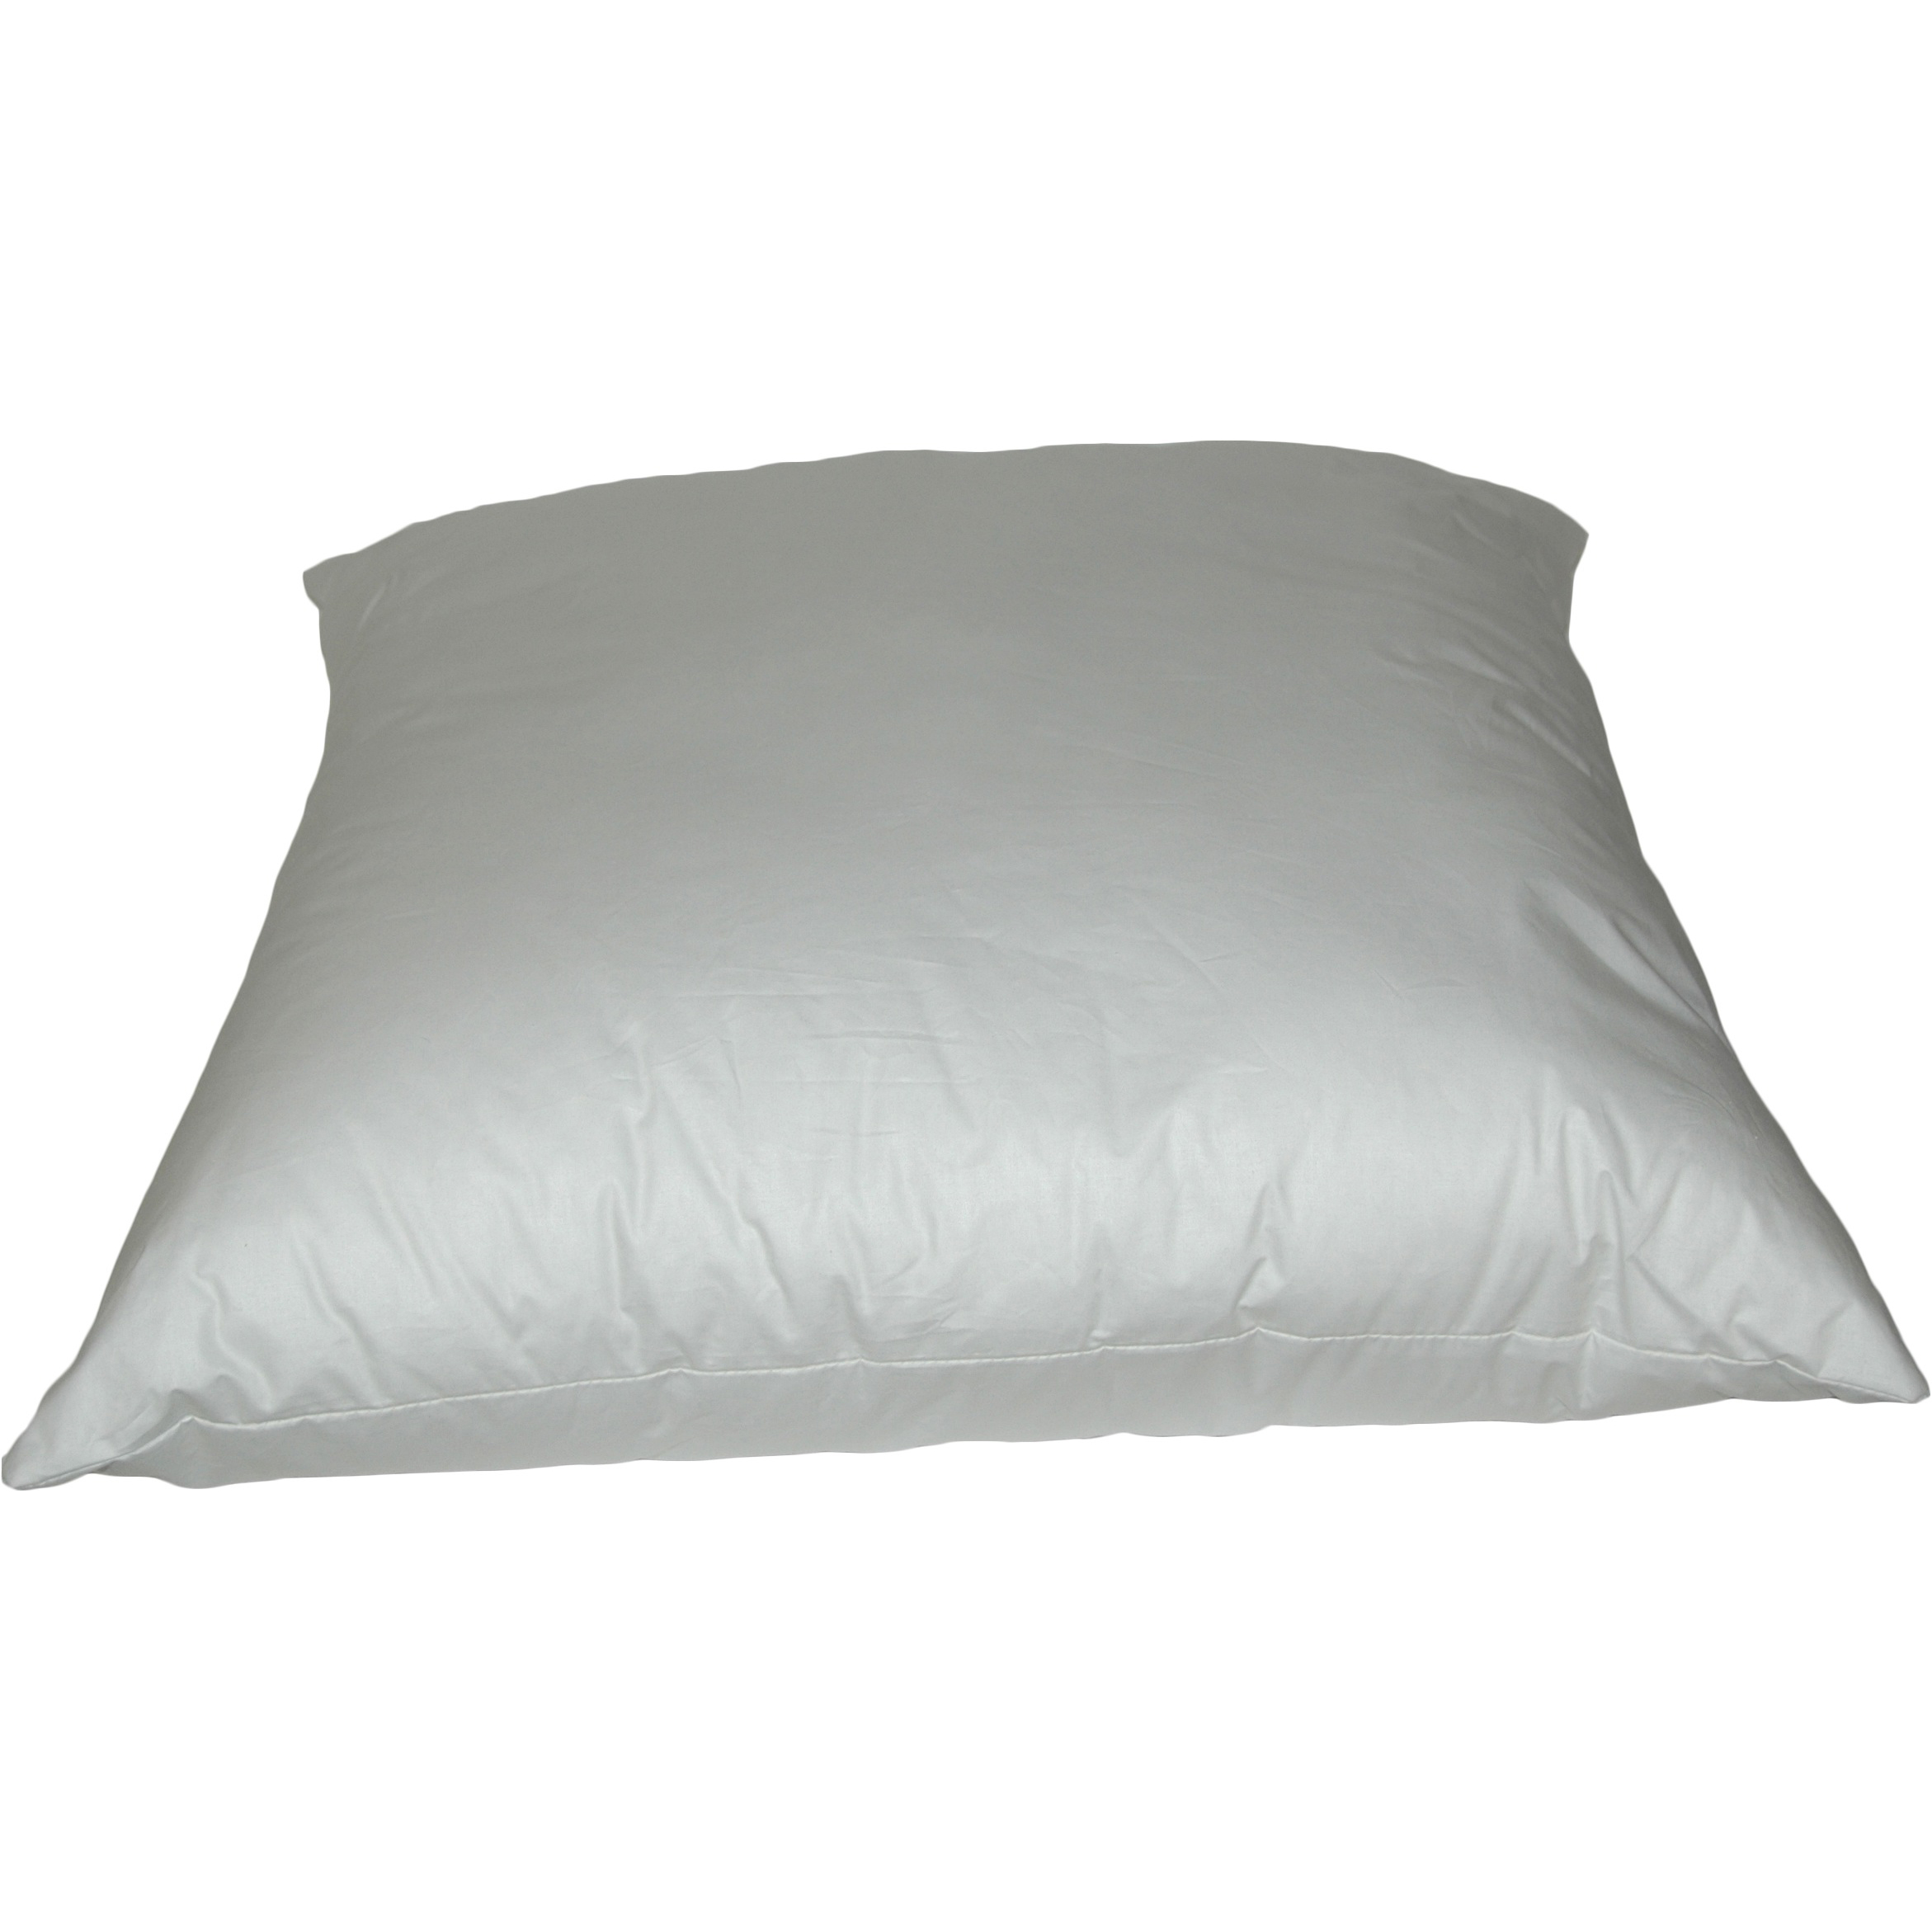 Rectangular K-Fiber Pillows 12x16 inch